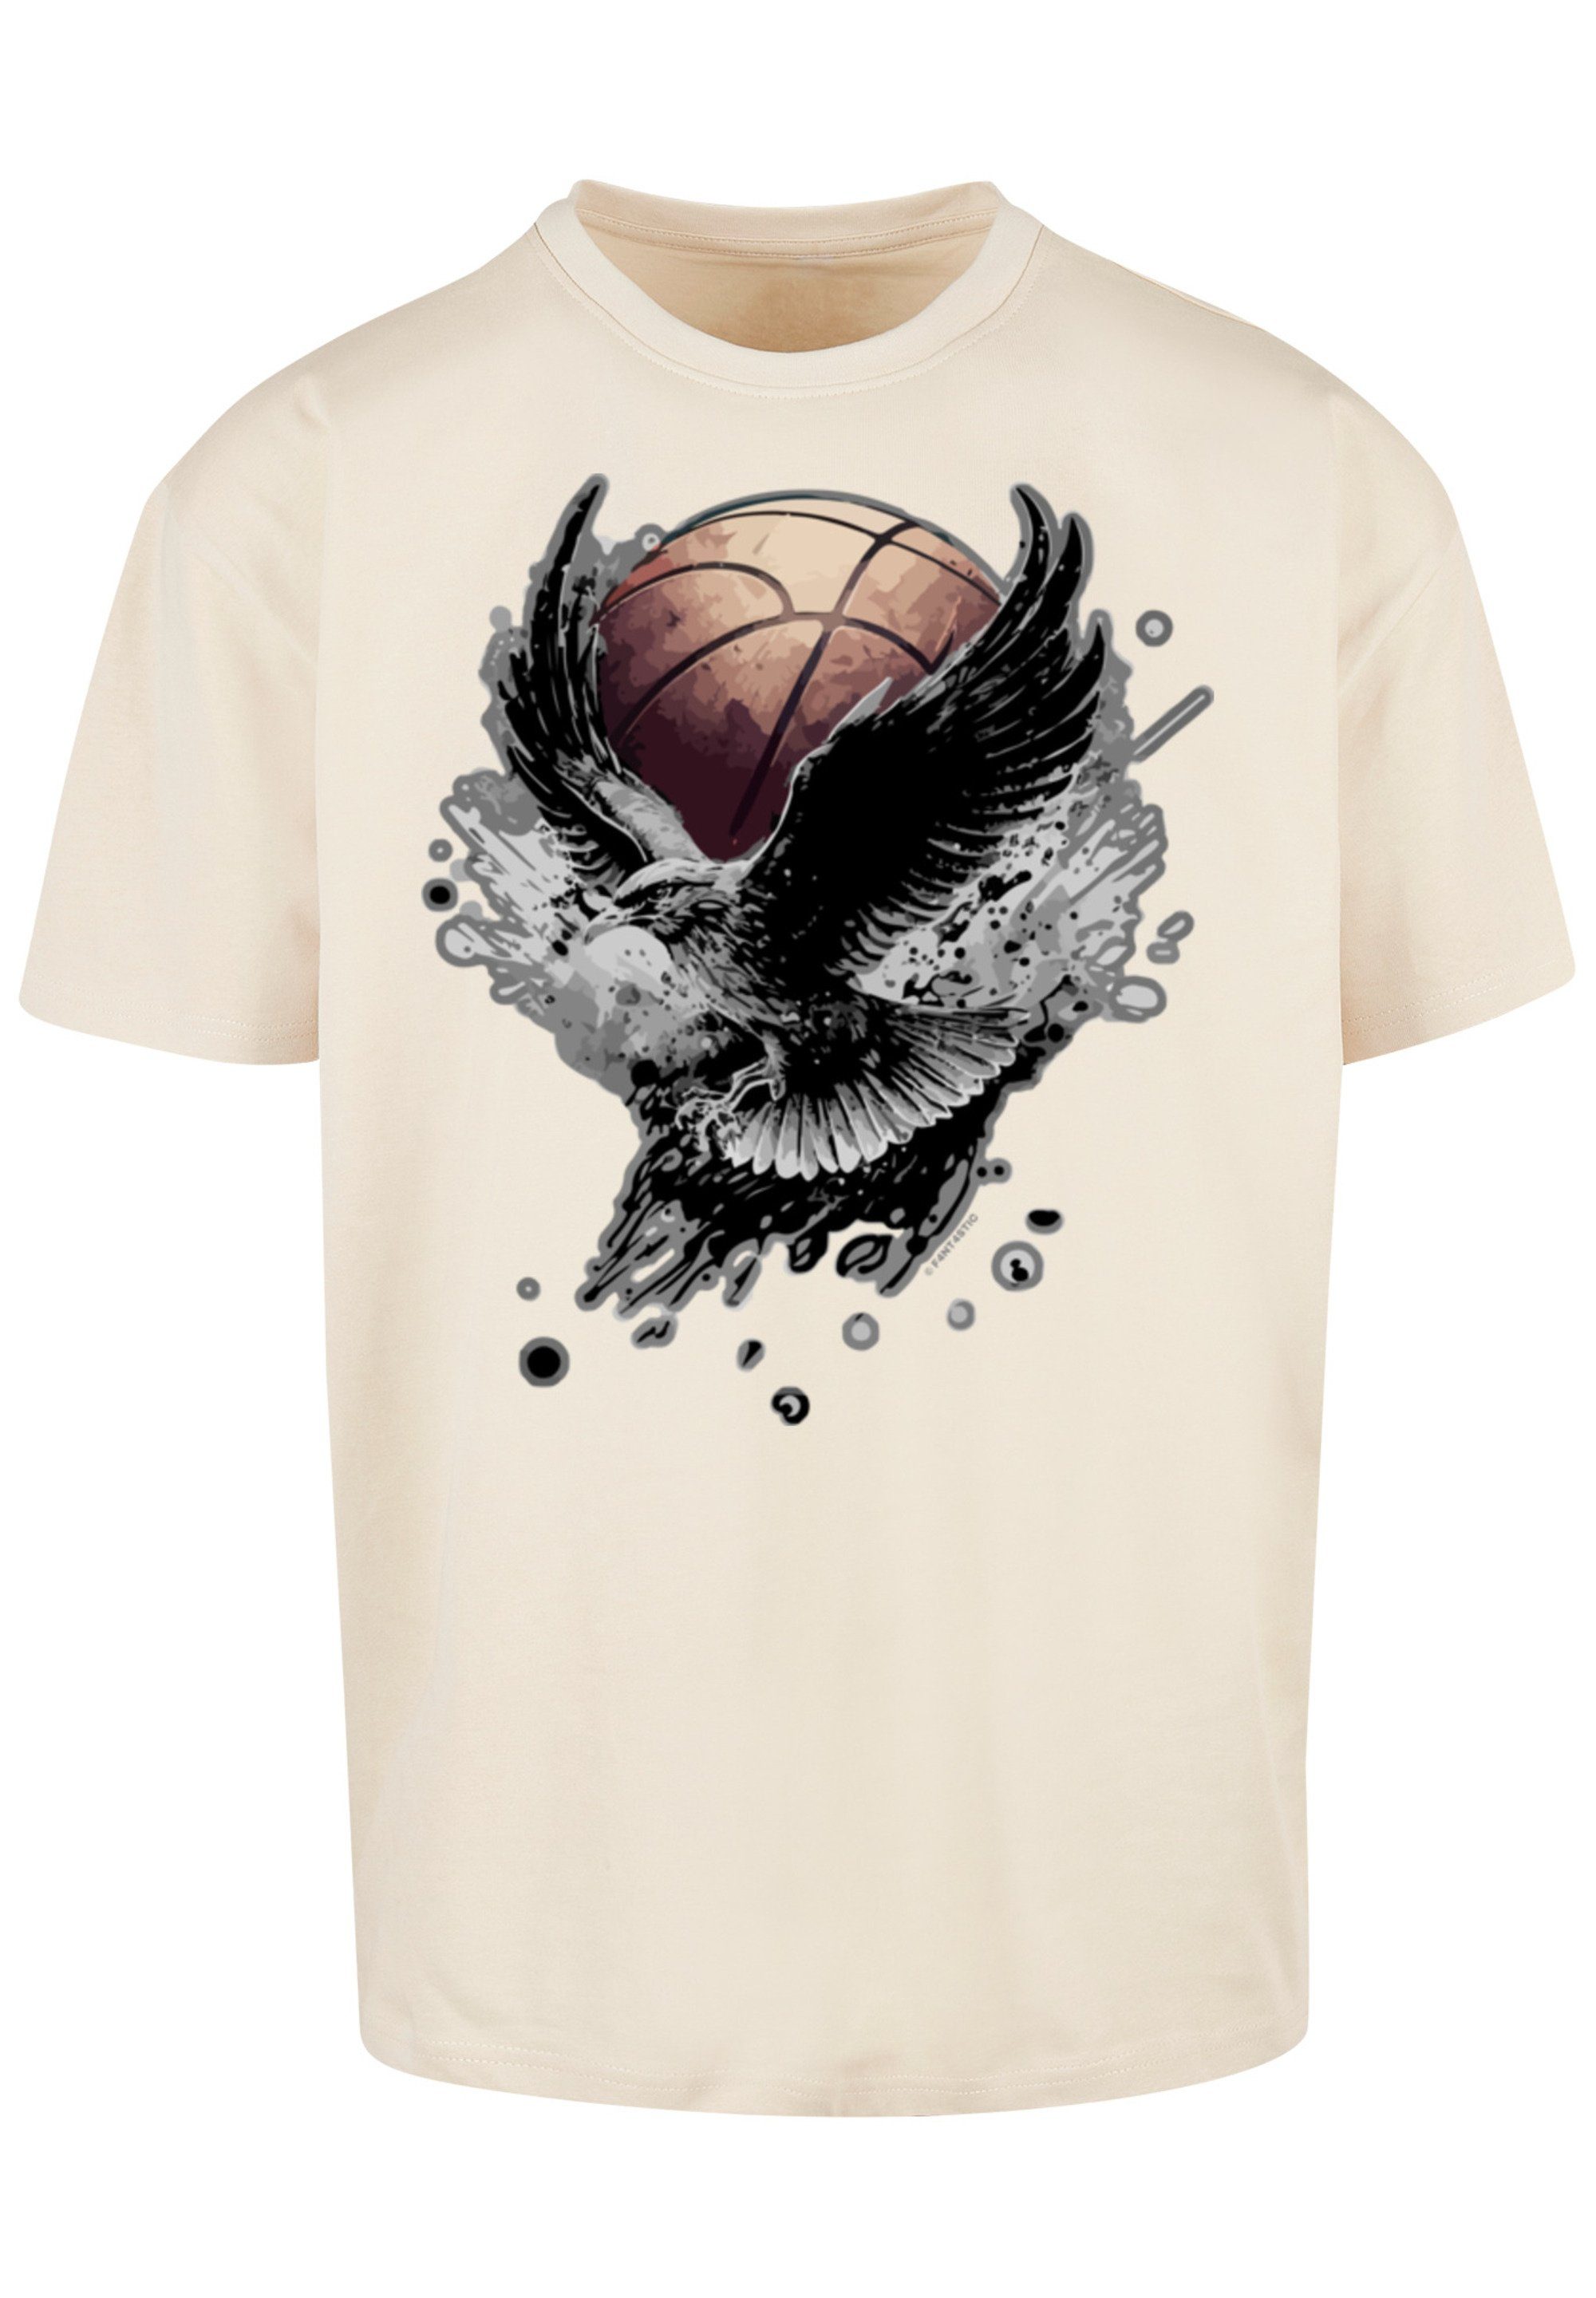 F4NT4STIC T-Shirt kleiner weit aus, bestellen eine Adler Print, Größe Basketball bitte Fällt